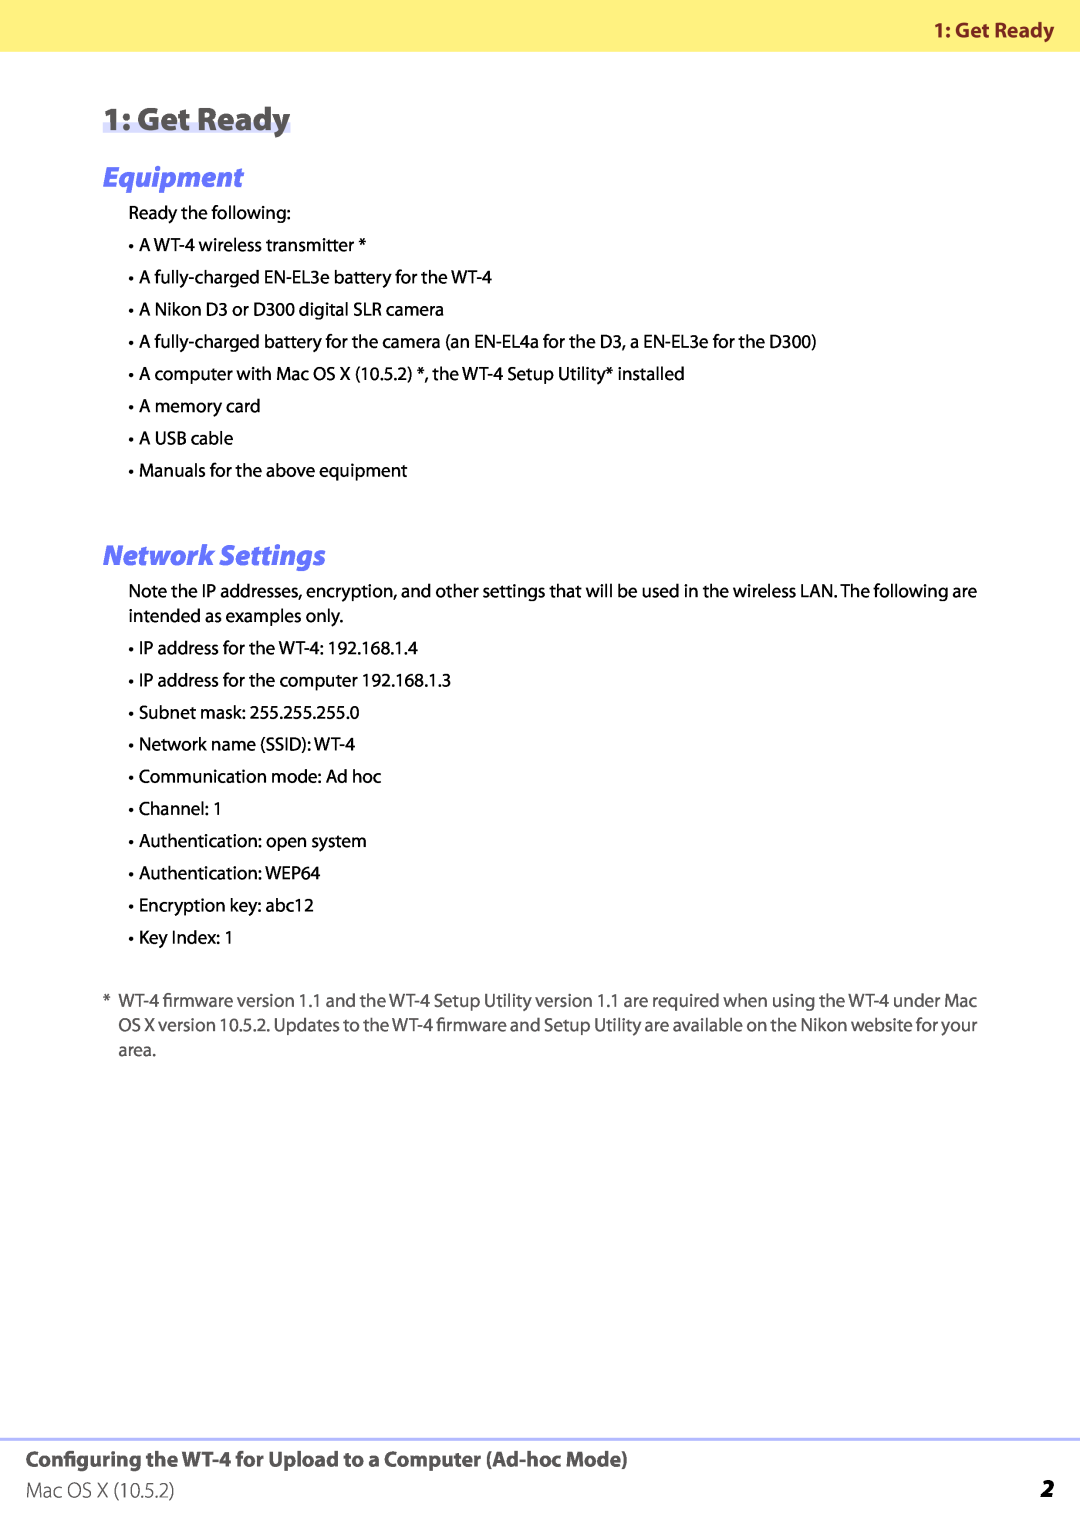 Nikon WT-4 manual 1: Get Ready, Equipment, Network Settings, Mac OS 